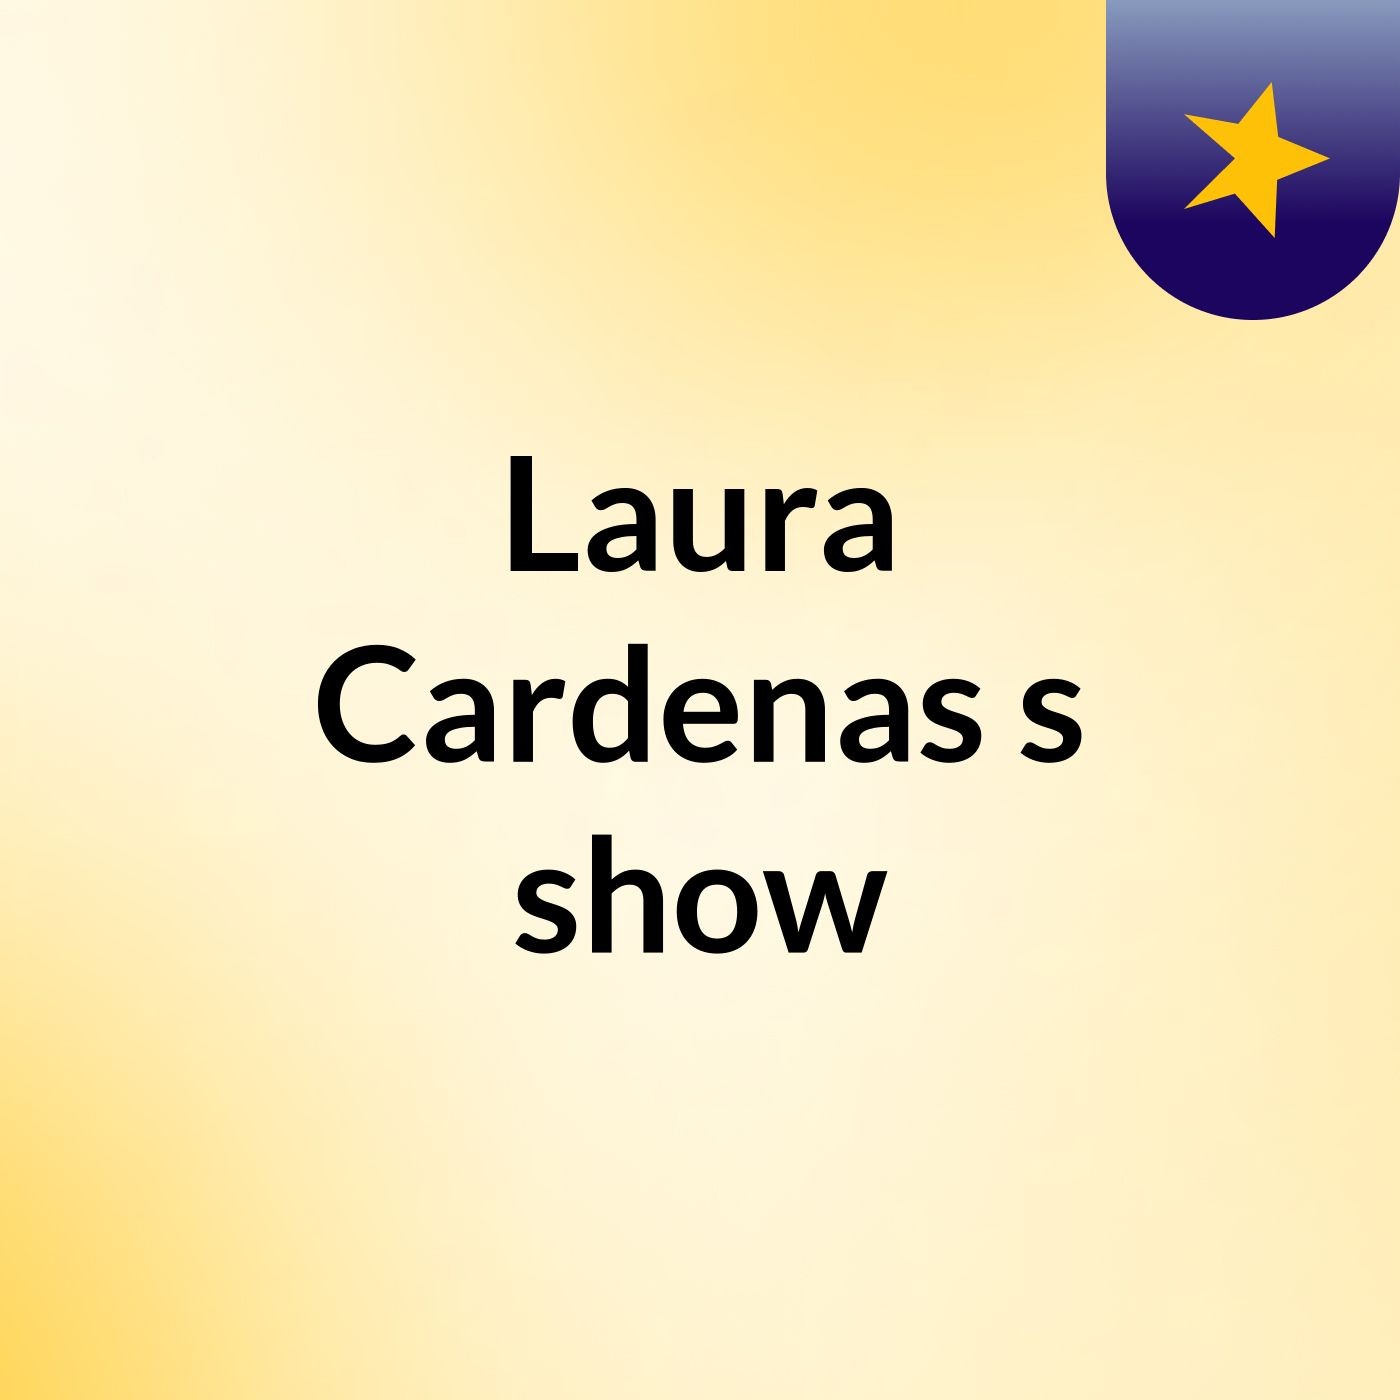 Laura Cardenas's show